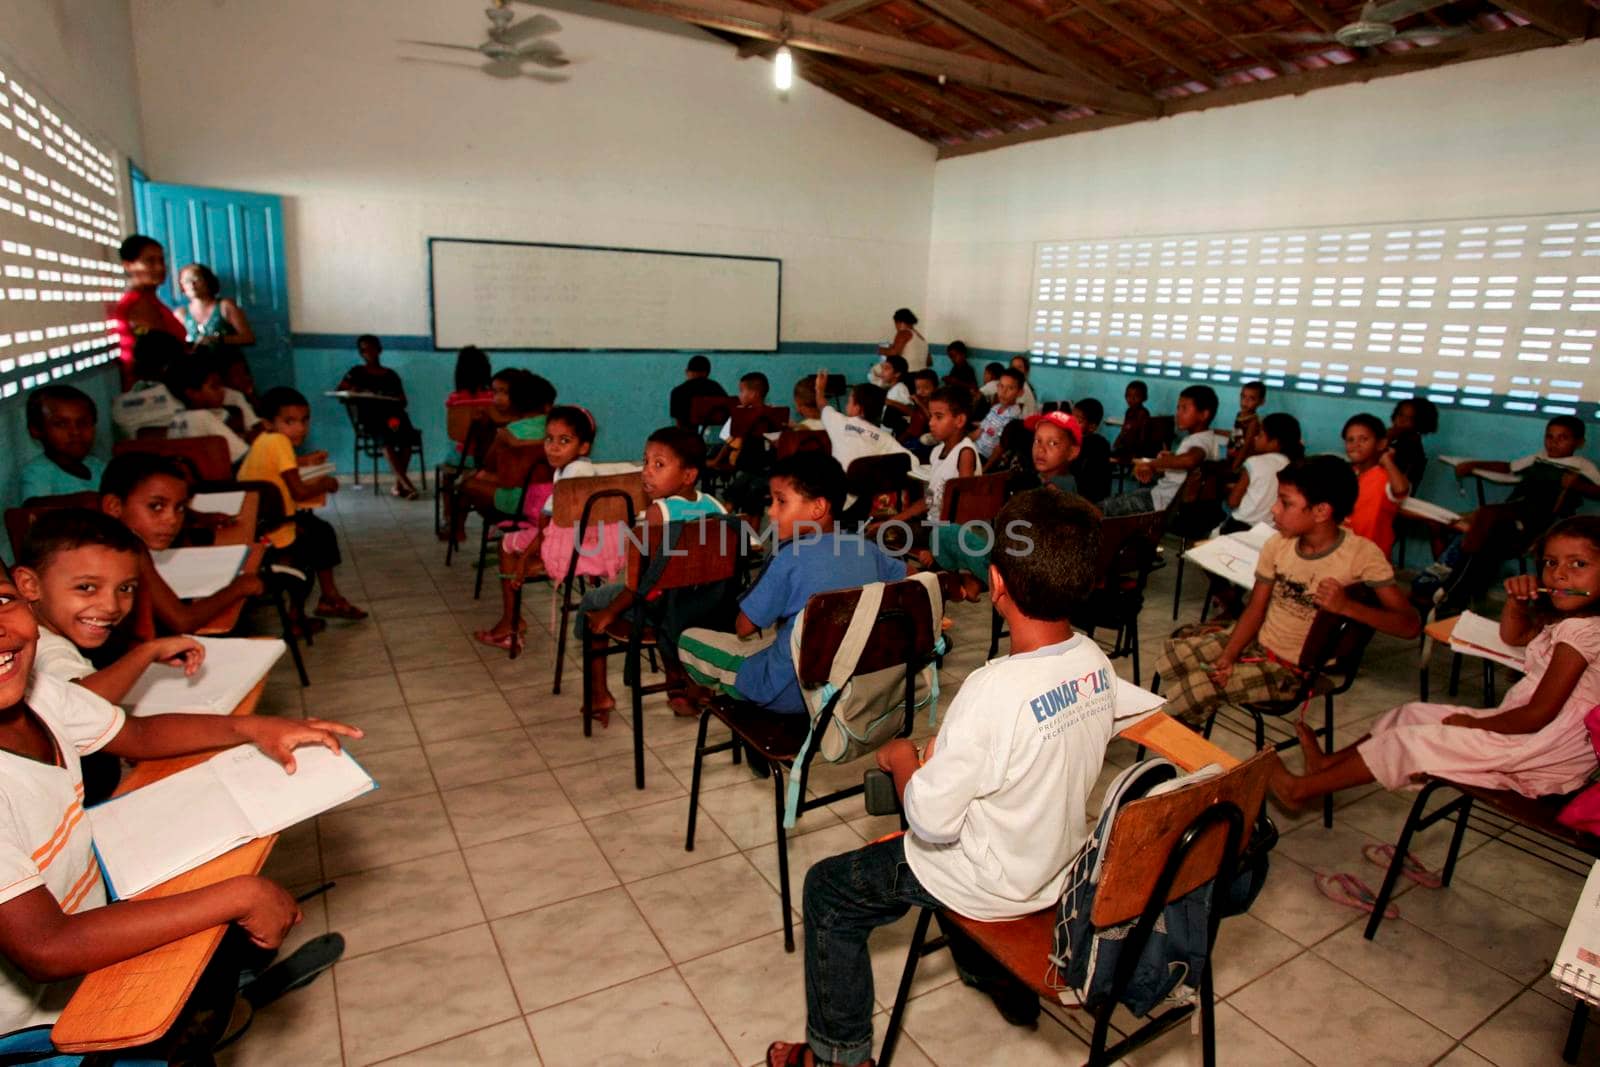 crowded classroom in public school by joasouza